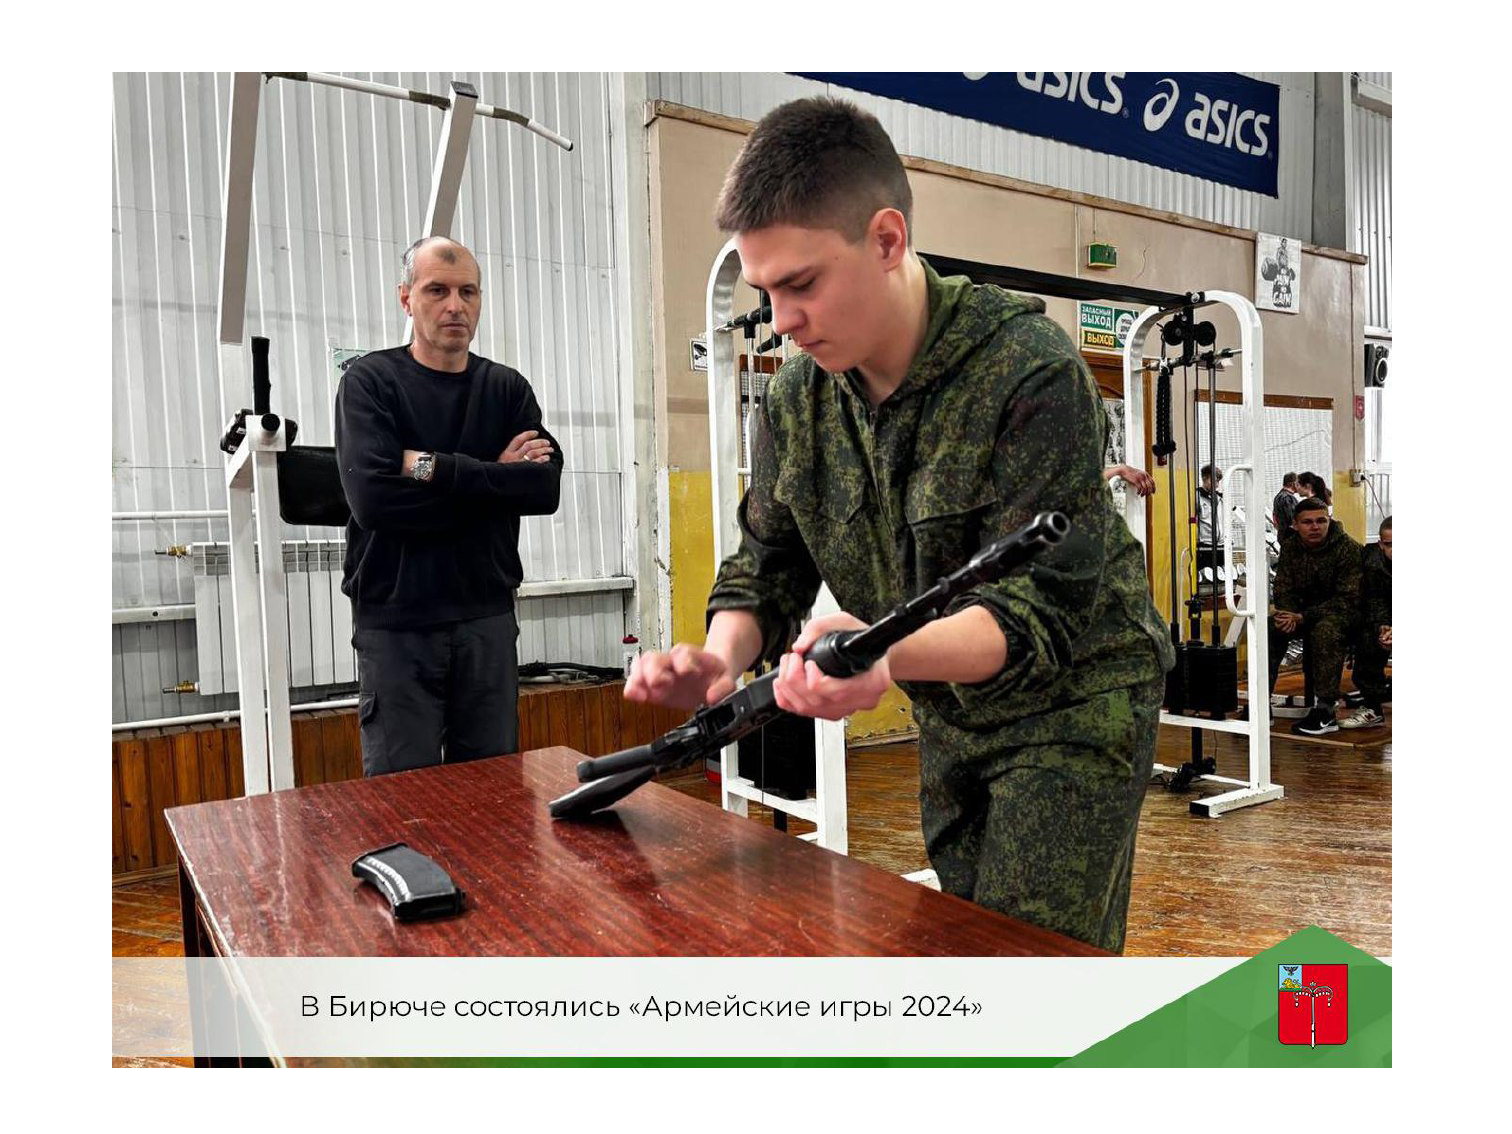 В Бирюче состоялись «Армейские игры 2024».